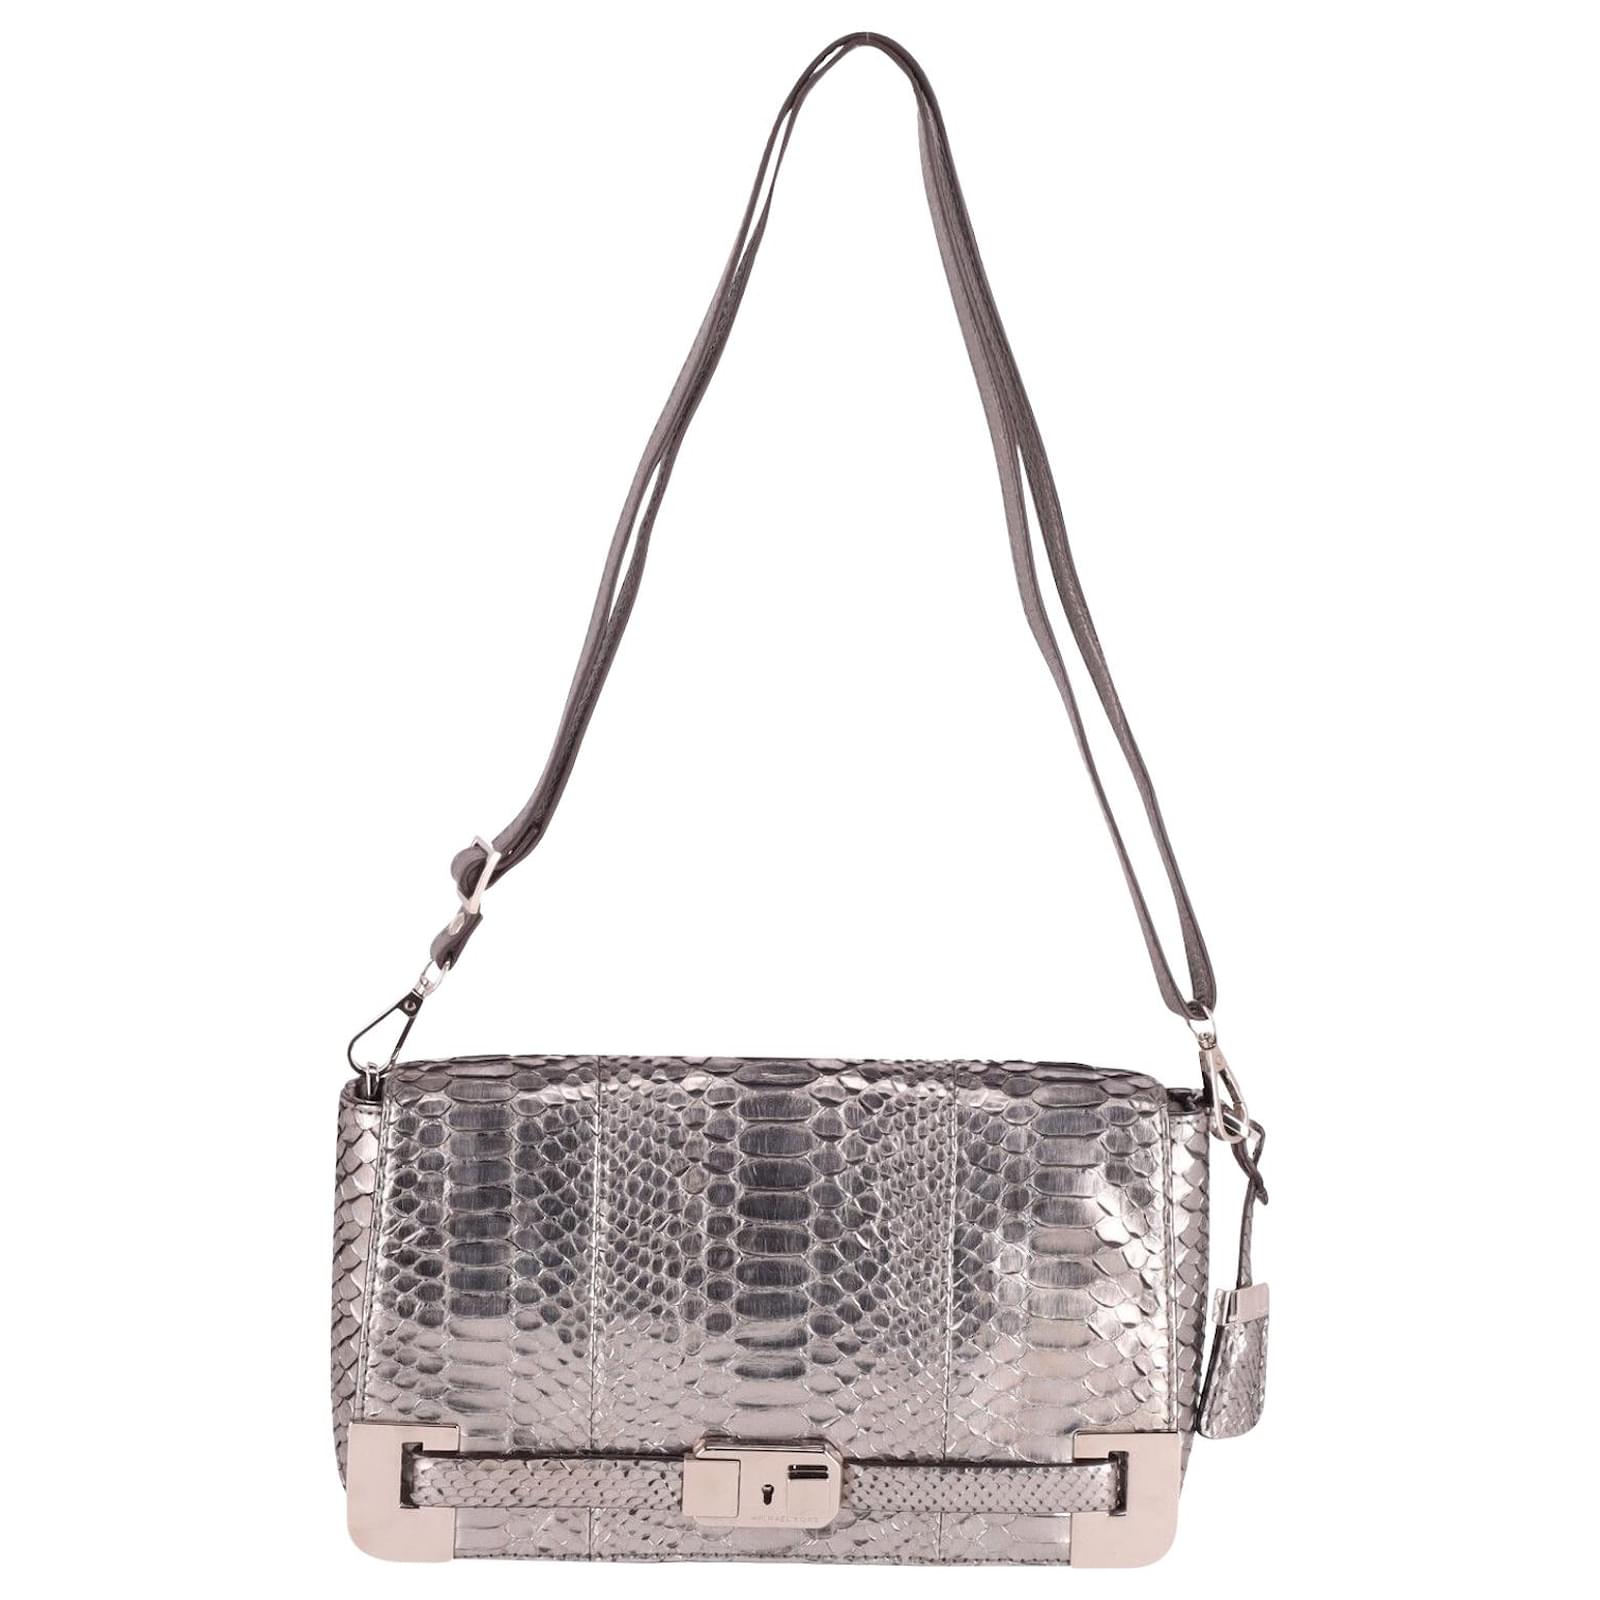 Michael Kors - Silver Michael Kors Handbag on Designer Wardrobe